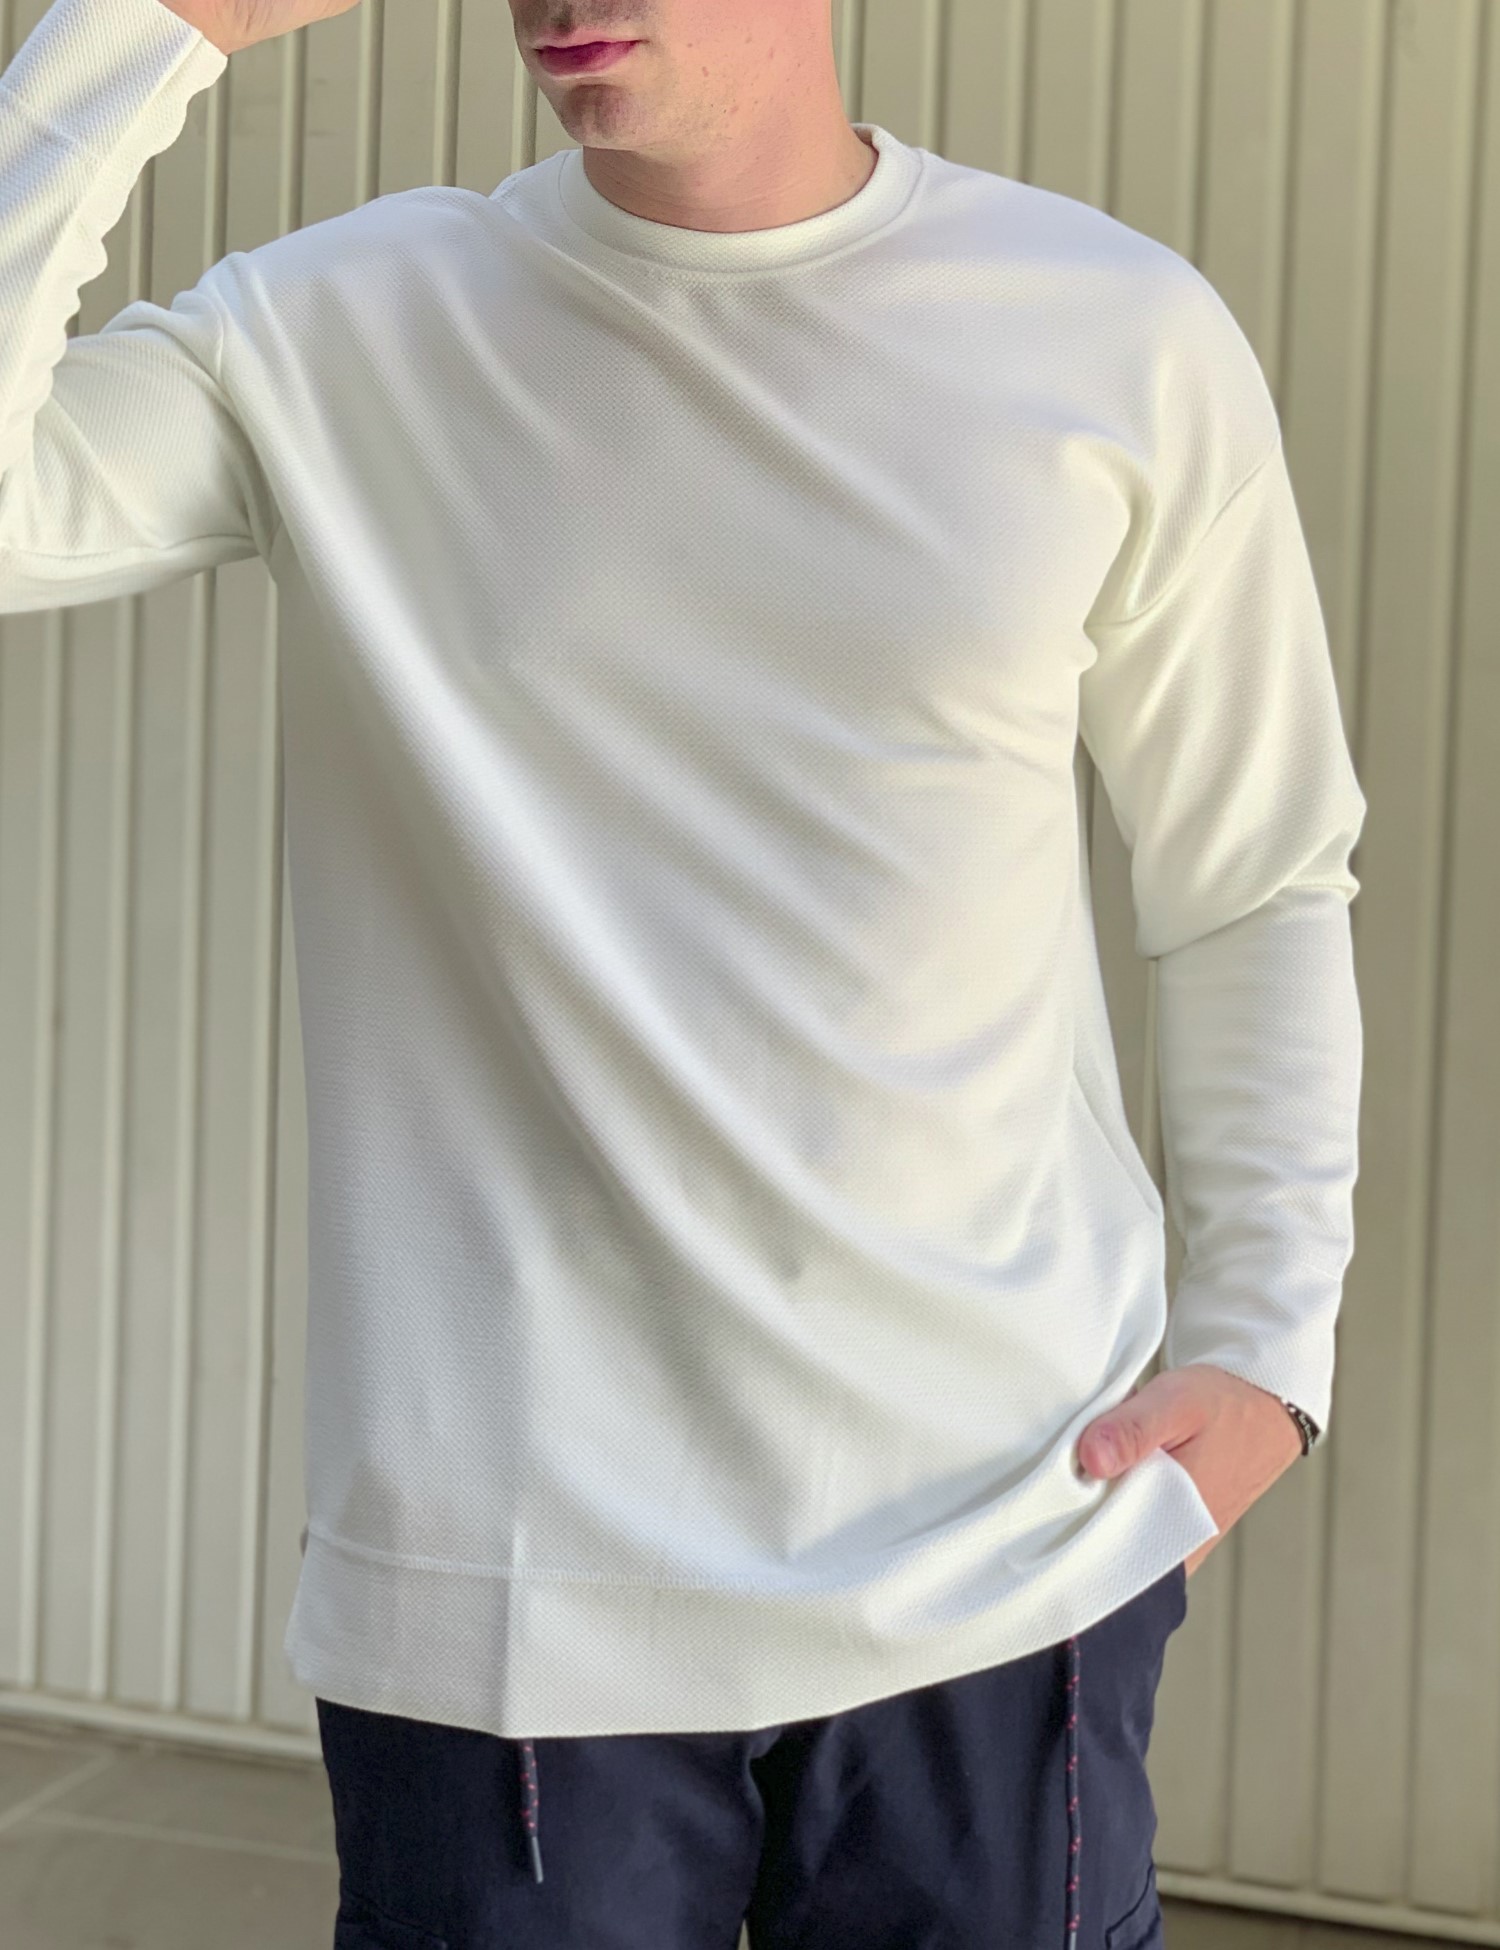 – Ανδρικη λευκη μακρυμανικη oversized μπλουζα με σαγρε υφασμα 1614W